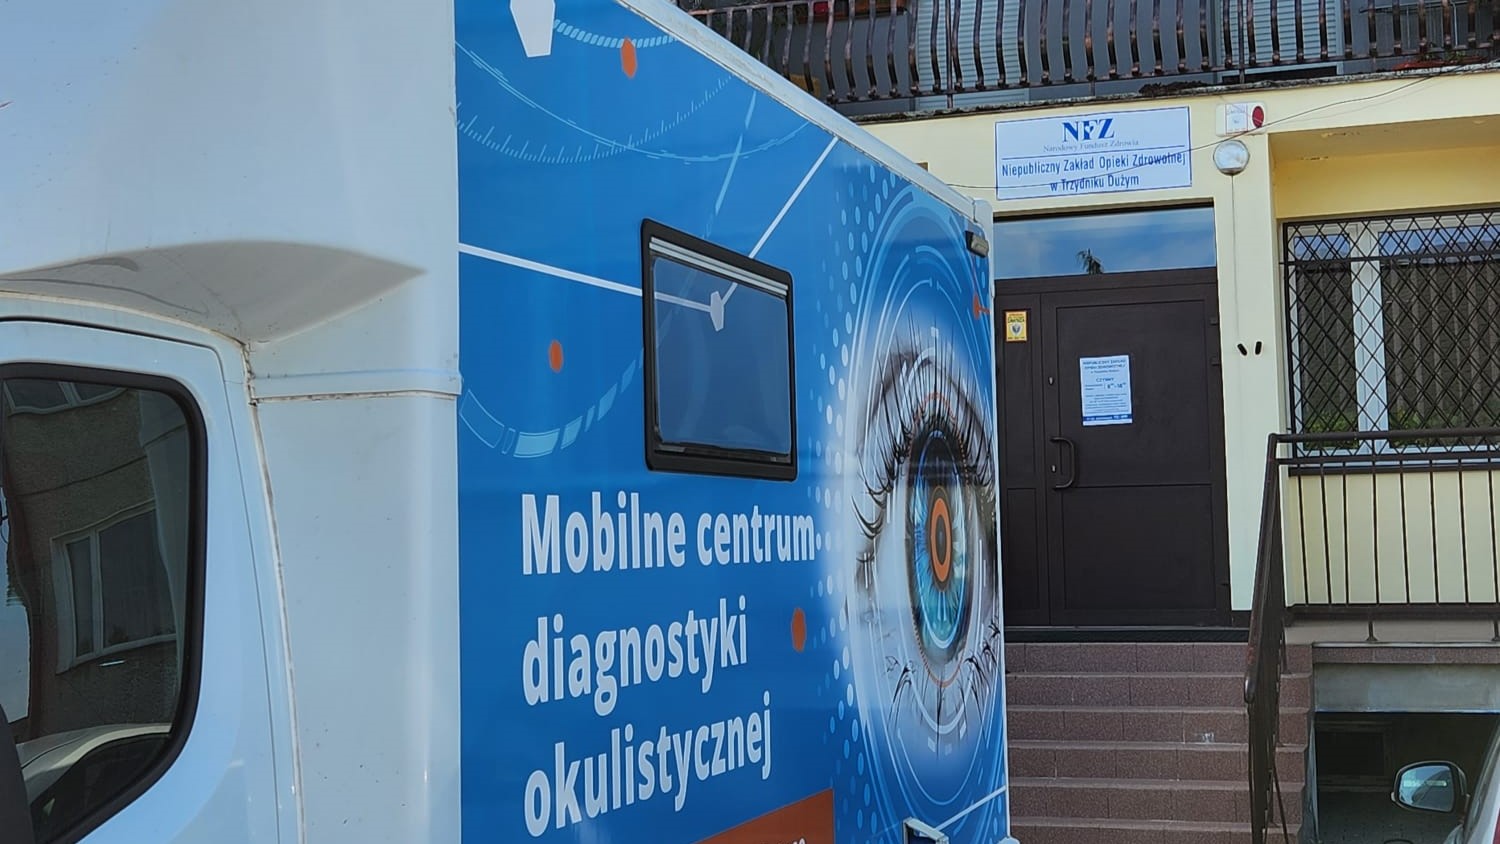 Samochód diagnostyczny Okobus zaparkowany przed przychodnią lekarską w Trzydniku Dużym.